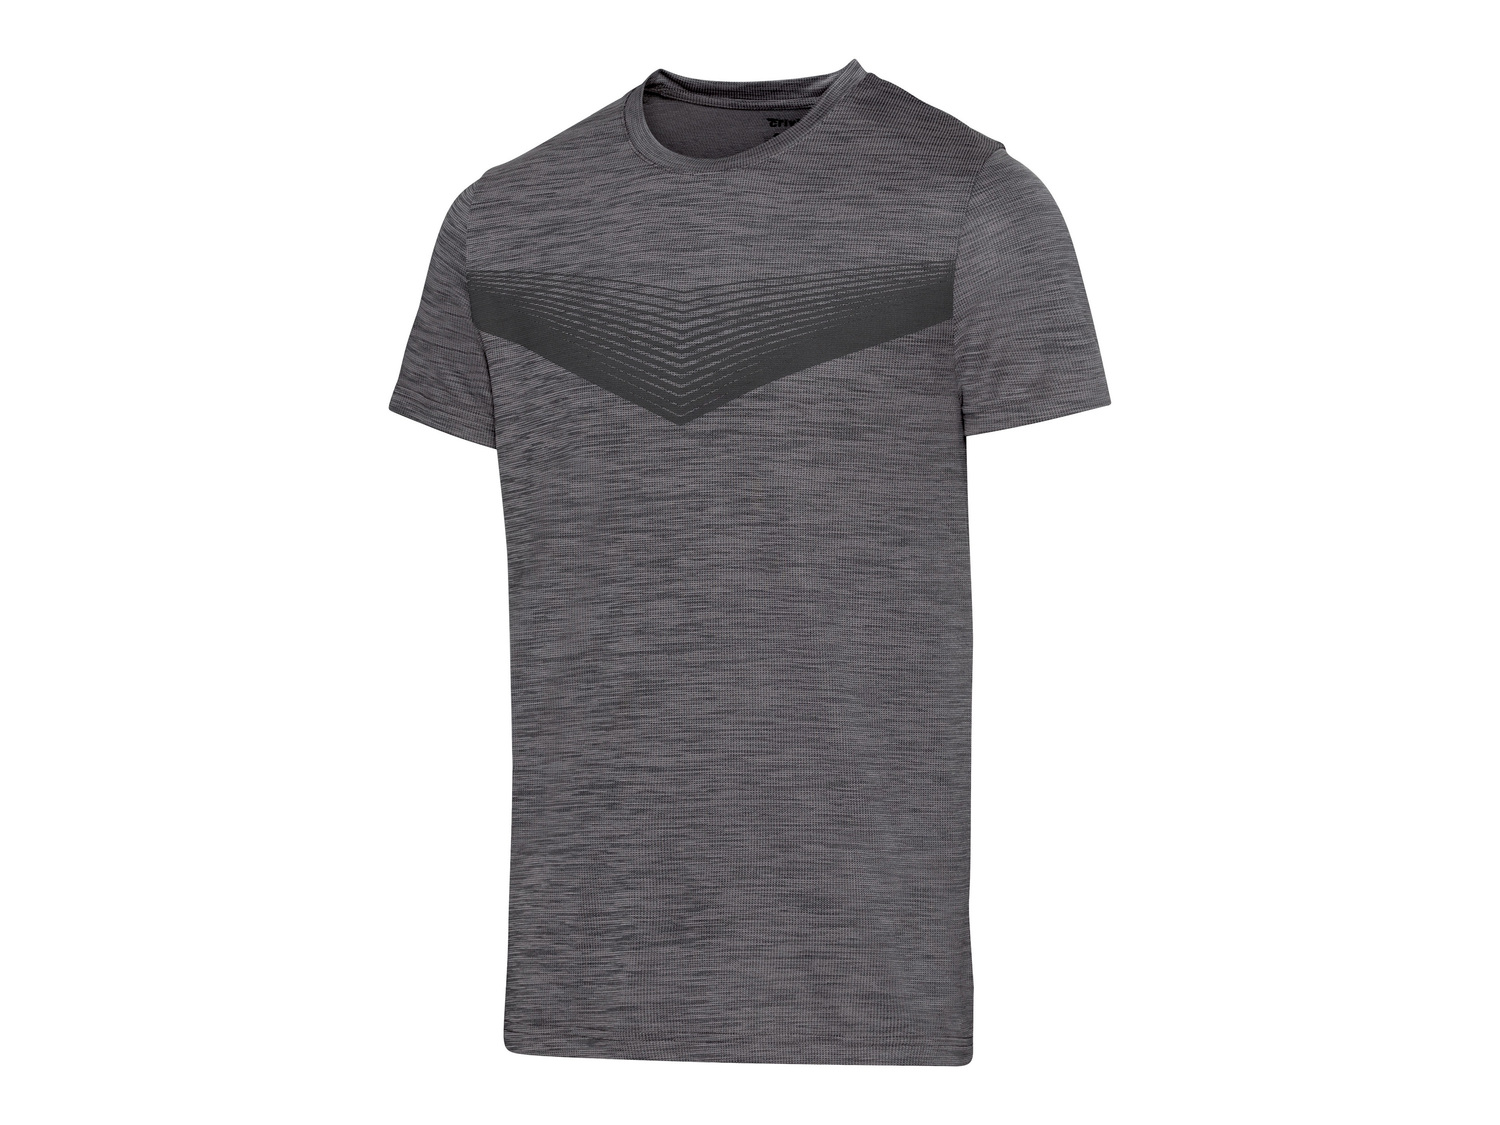 T-shirt sportiva da uomo Crivit, prezzo 4.99 &#8364; 
Misure: M-XL
Caratteristiche

- ...